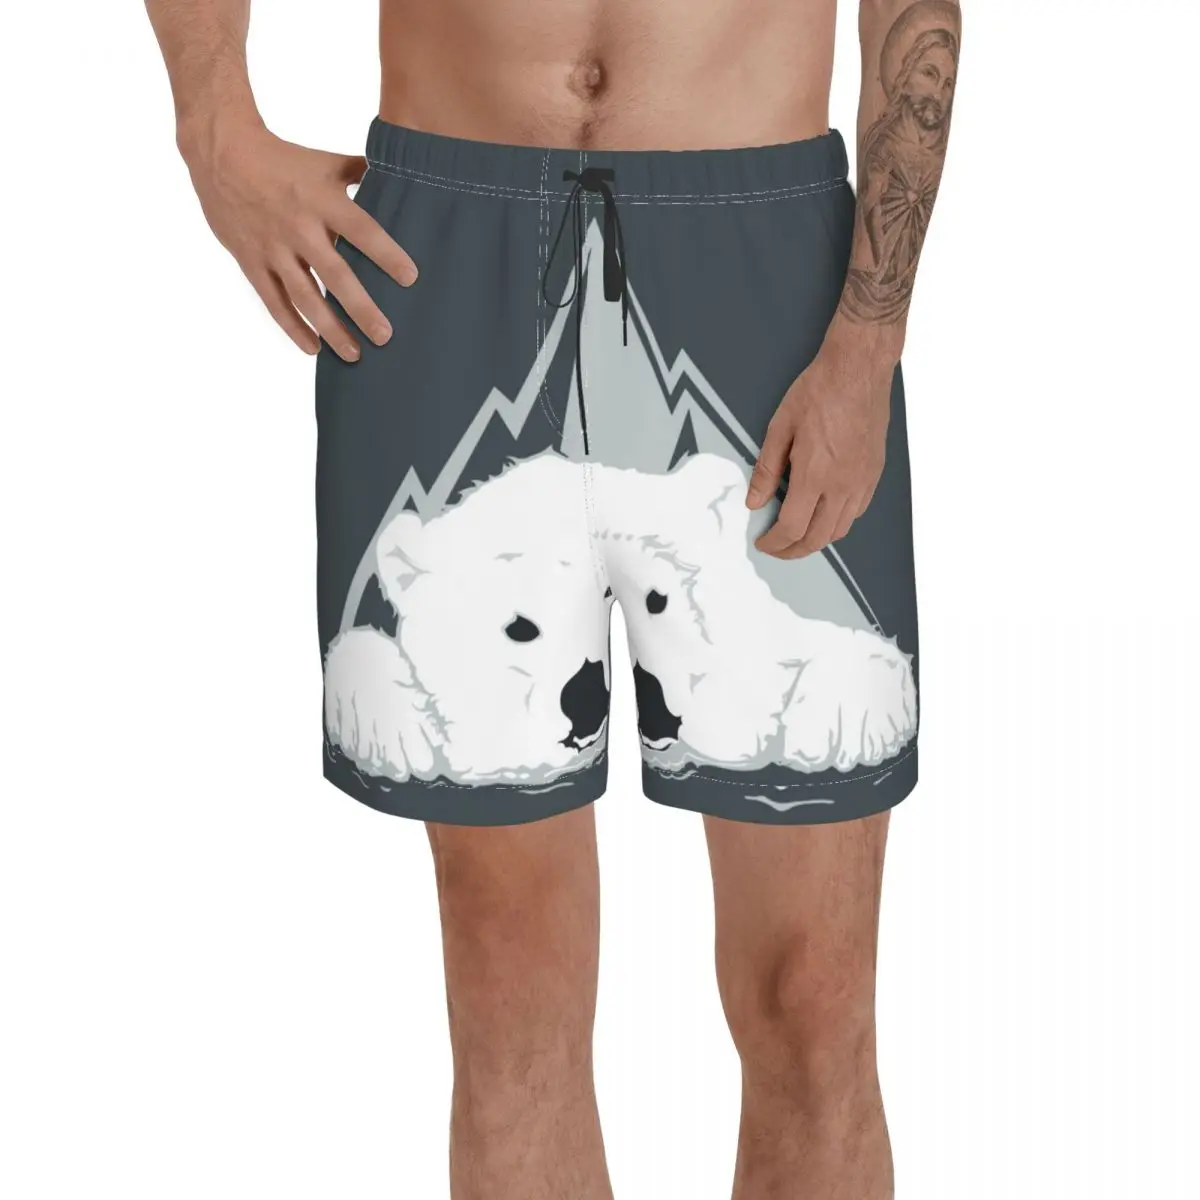 

Мужские штаны плавки, пляжные плавки для серфинга с белым медведем, спортивные быстросохнущие сетчатые повседневные брифы для мальчиков